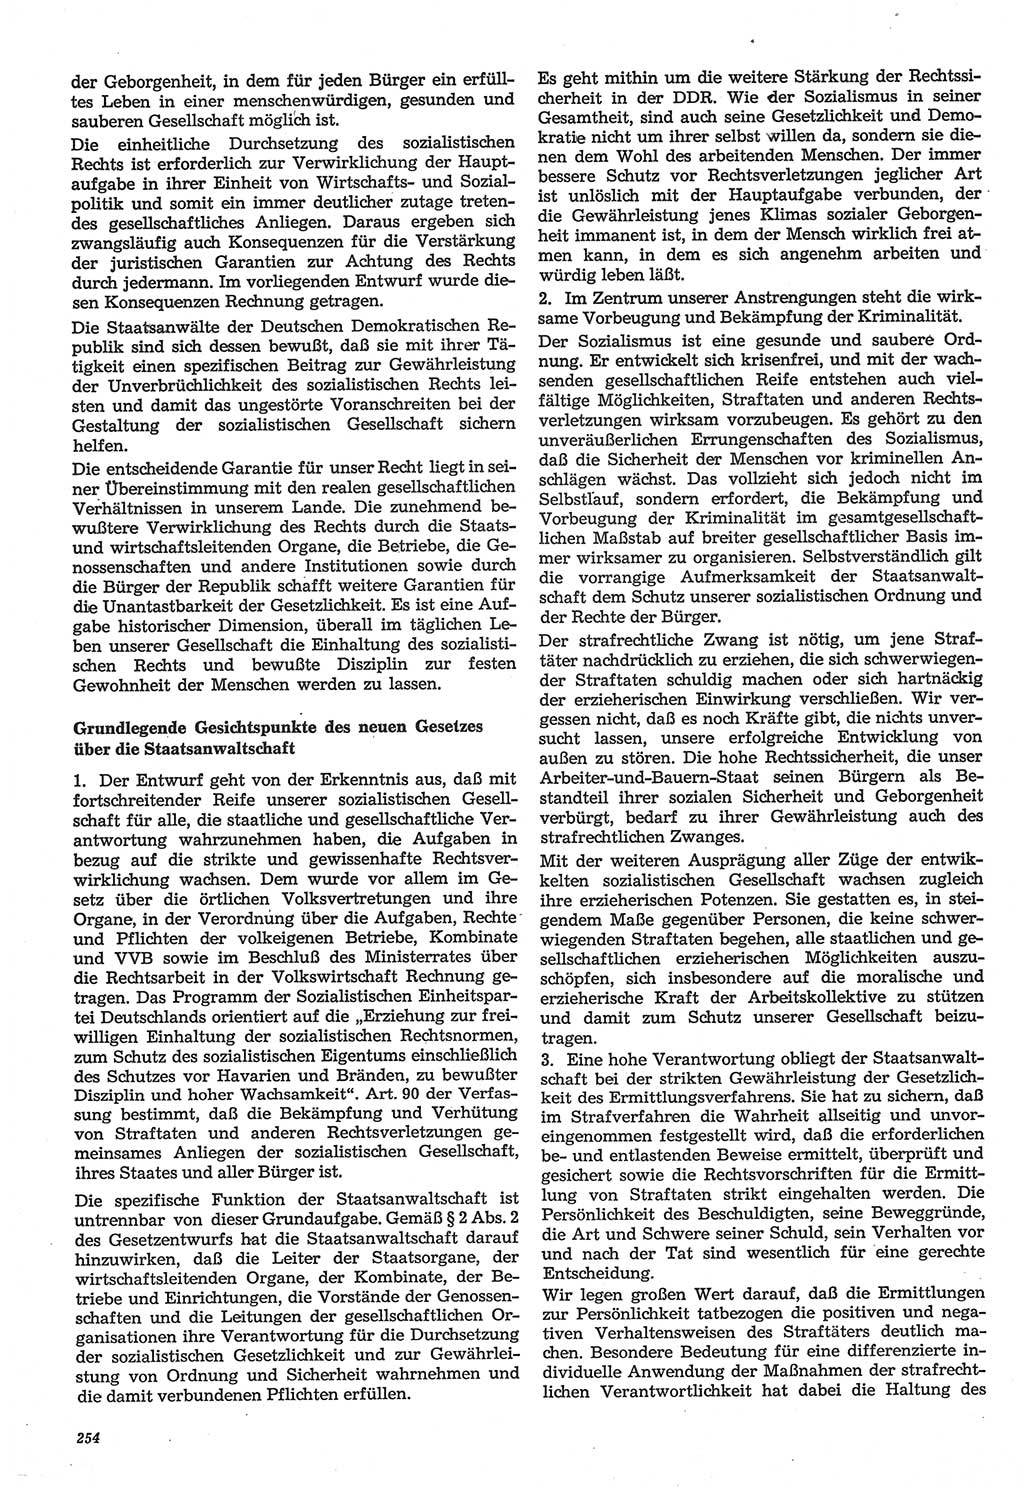 Neue Justiz (NJ), Zeitschrift für Recht und Rechtswissenschaft-Zeitschrift, sozialistisches Recht und Gesetzlichkeit, 31. Jahrgang 1977, Seite 254 (NJ DDR 1977, S. 254)